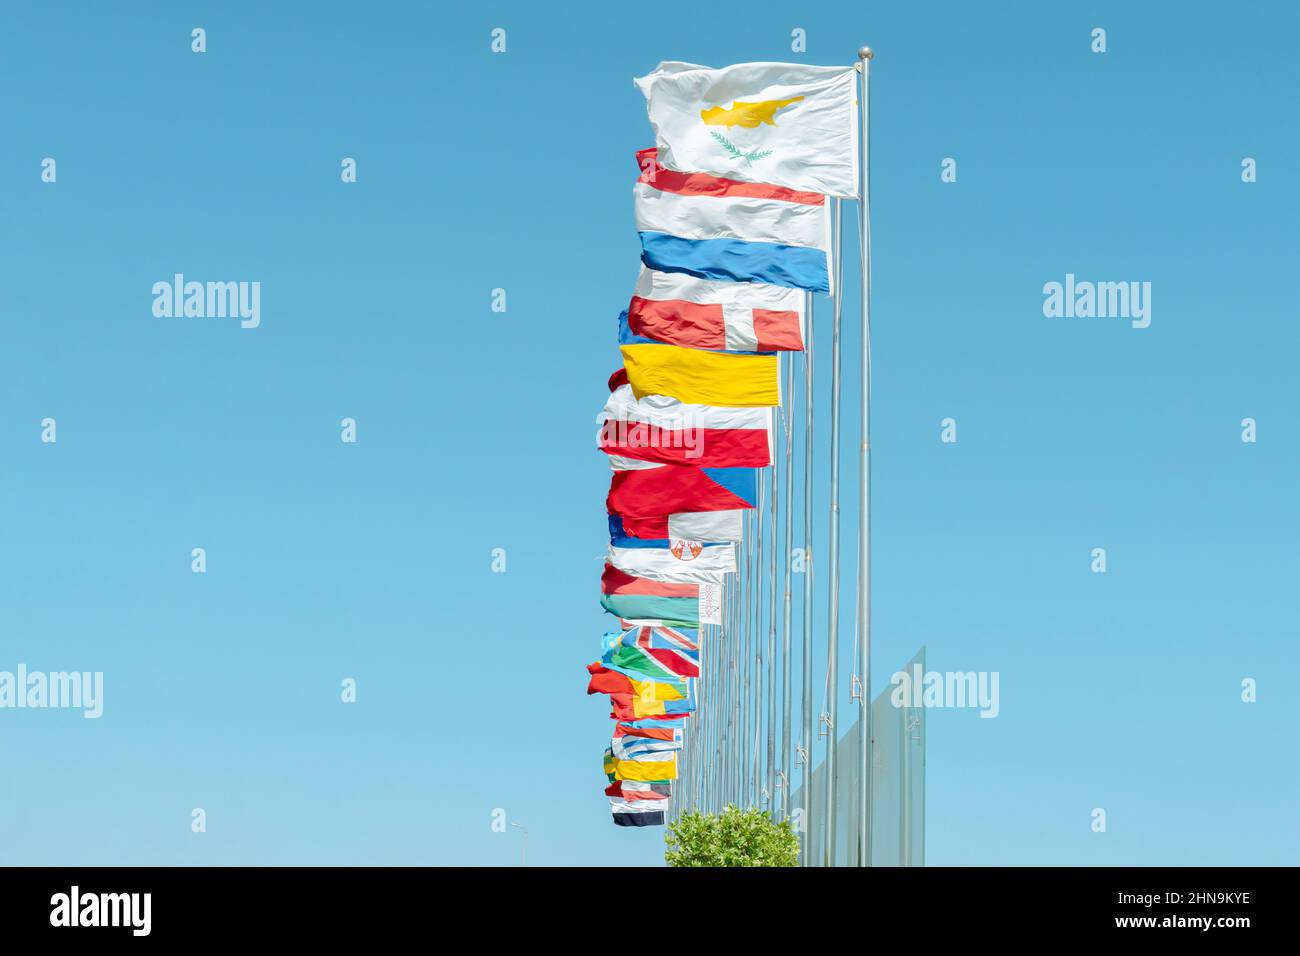 Niedrige Ansicht der Flaggen verschiedener UN-Mitglieder, die gegen den blauen Himmel auf dem Wind flattern Stockfoto